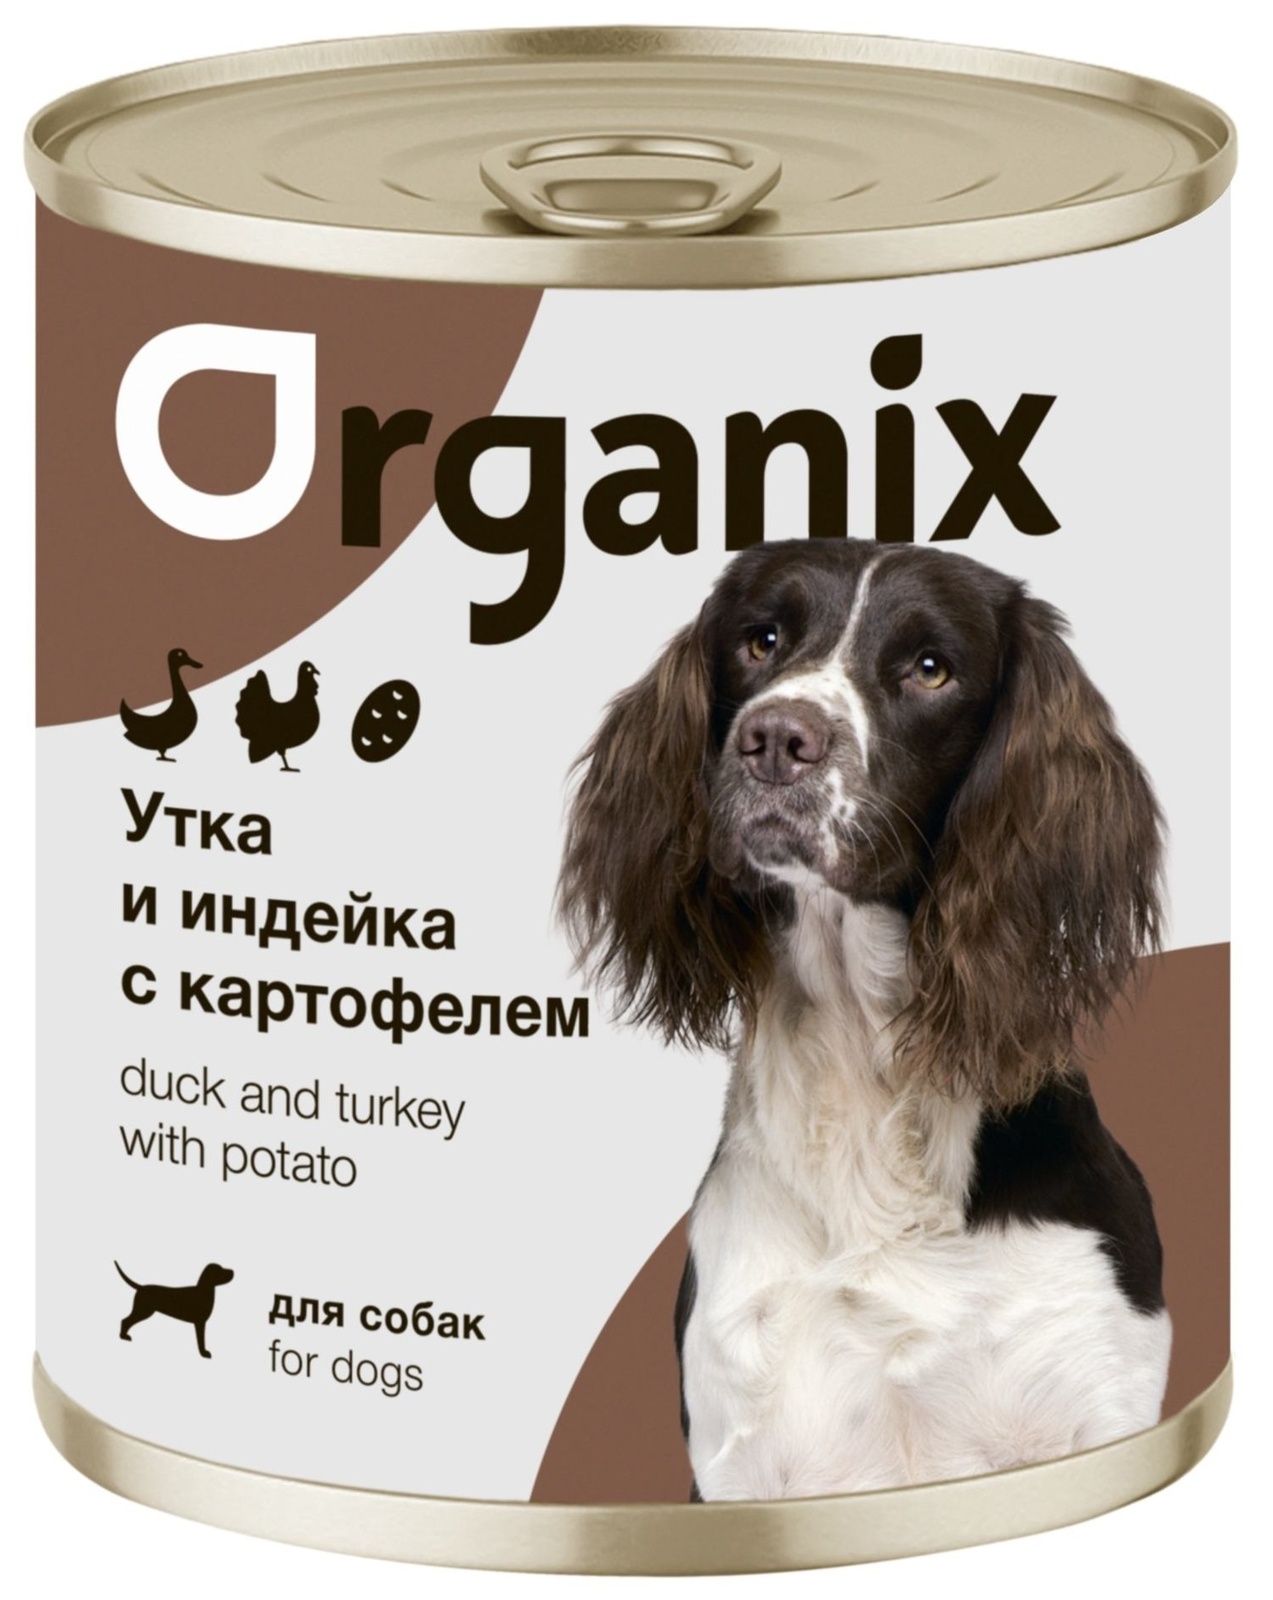 Organix консервы Organix консервы для собак Утка, индейка, картофель (100 г) organix консервы organix монобелковые премиум консервы для собак с уткой 100 г